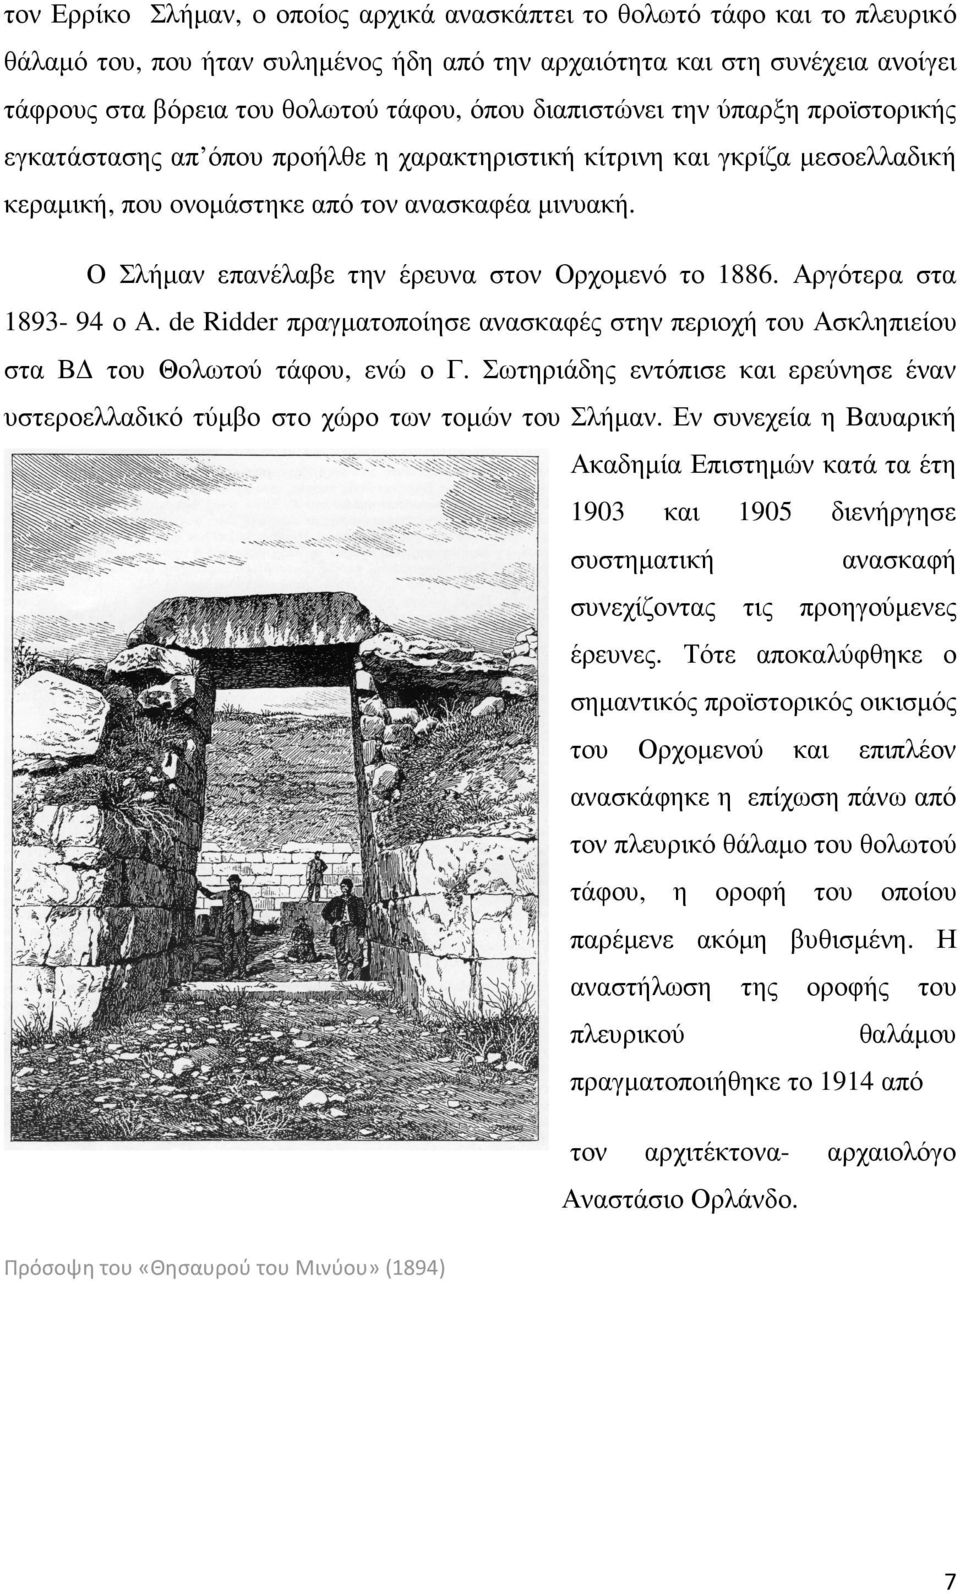 Ο Σλήµαν επανέλαβε την έρευνα στον Ορχοµενό το 1886. Αργότερα στα 1893-94 ο Α. de Ridder πραγµατοποίησε ανασκαφές στην περιοχή του Ασκληπιείου στα Β του Θολωτού τάφου, ενώ ο Γ.